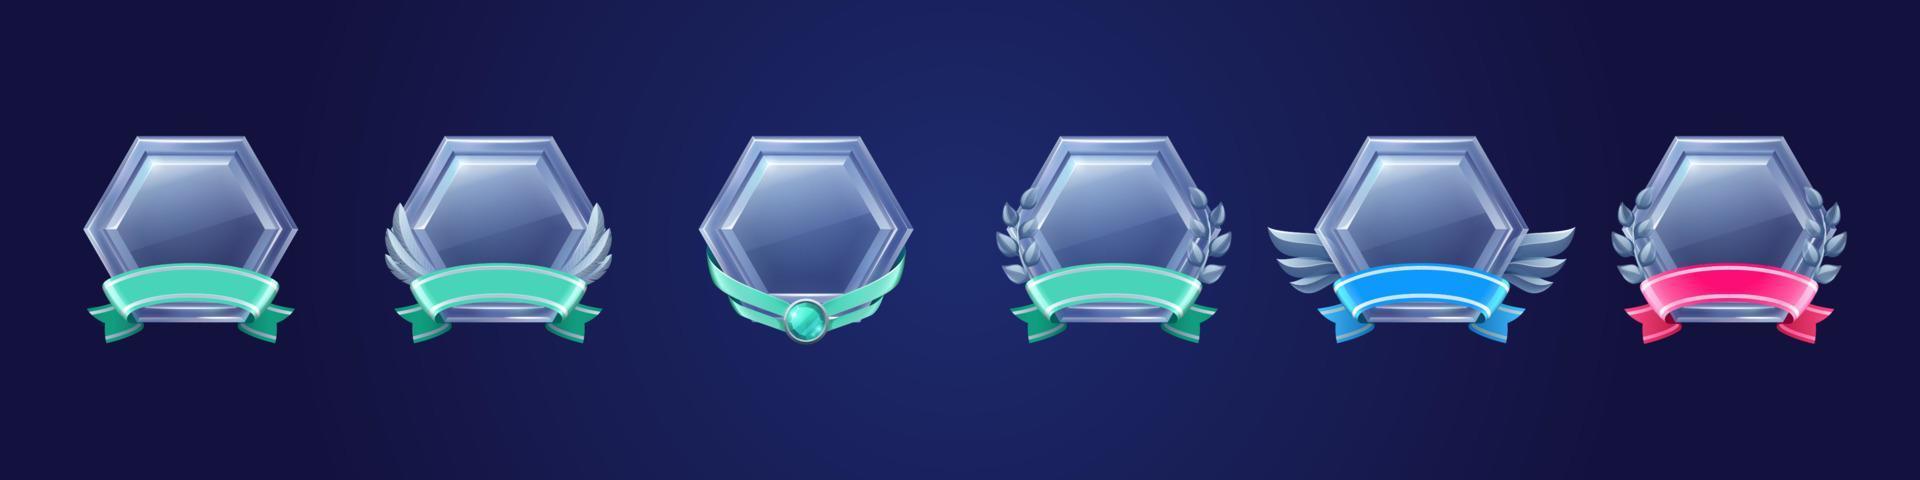 emblemas de prêmio de prata, rótulos hexagonais para jogo vetor